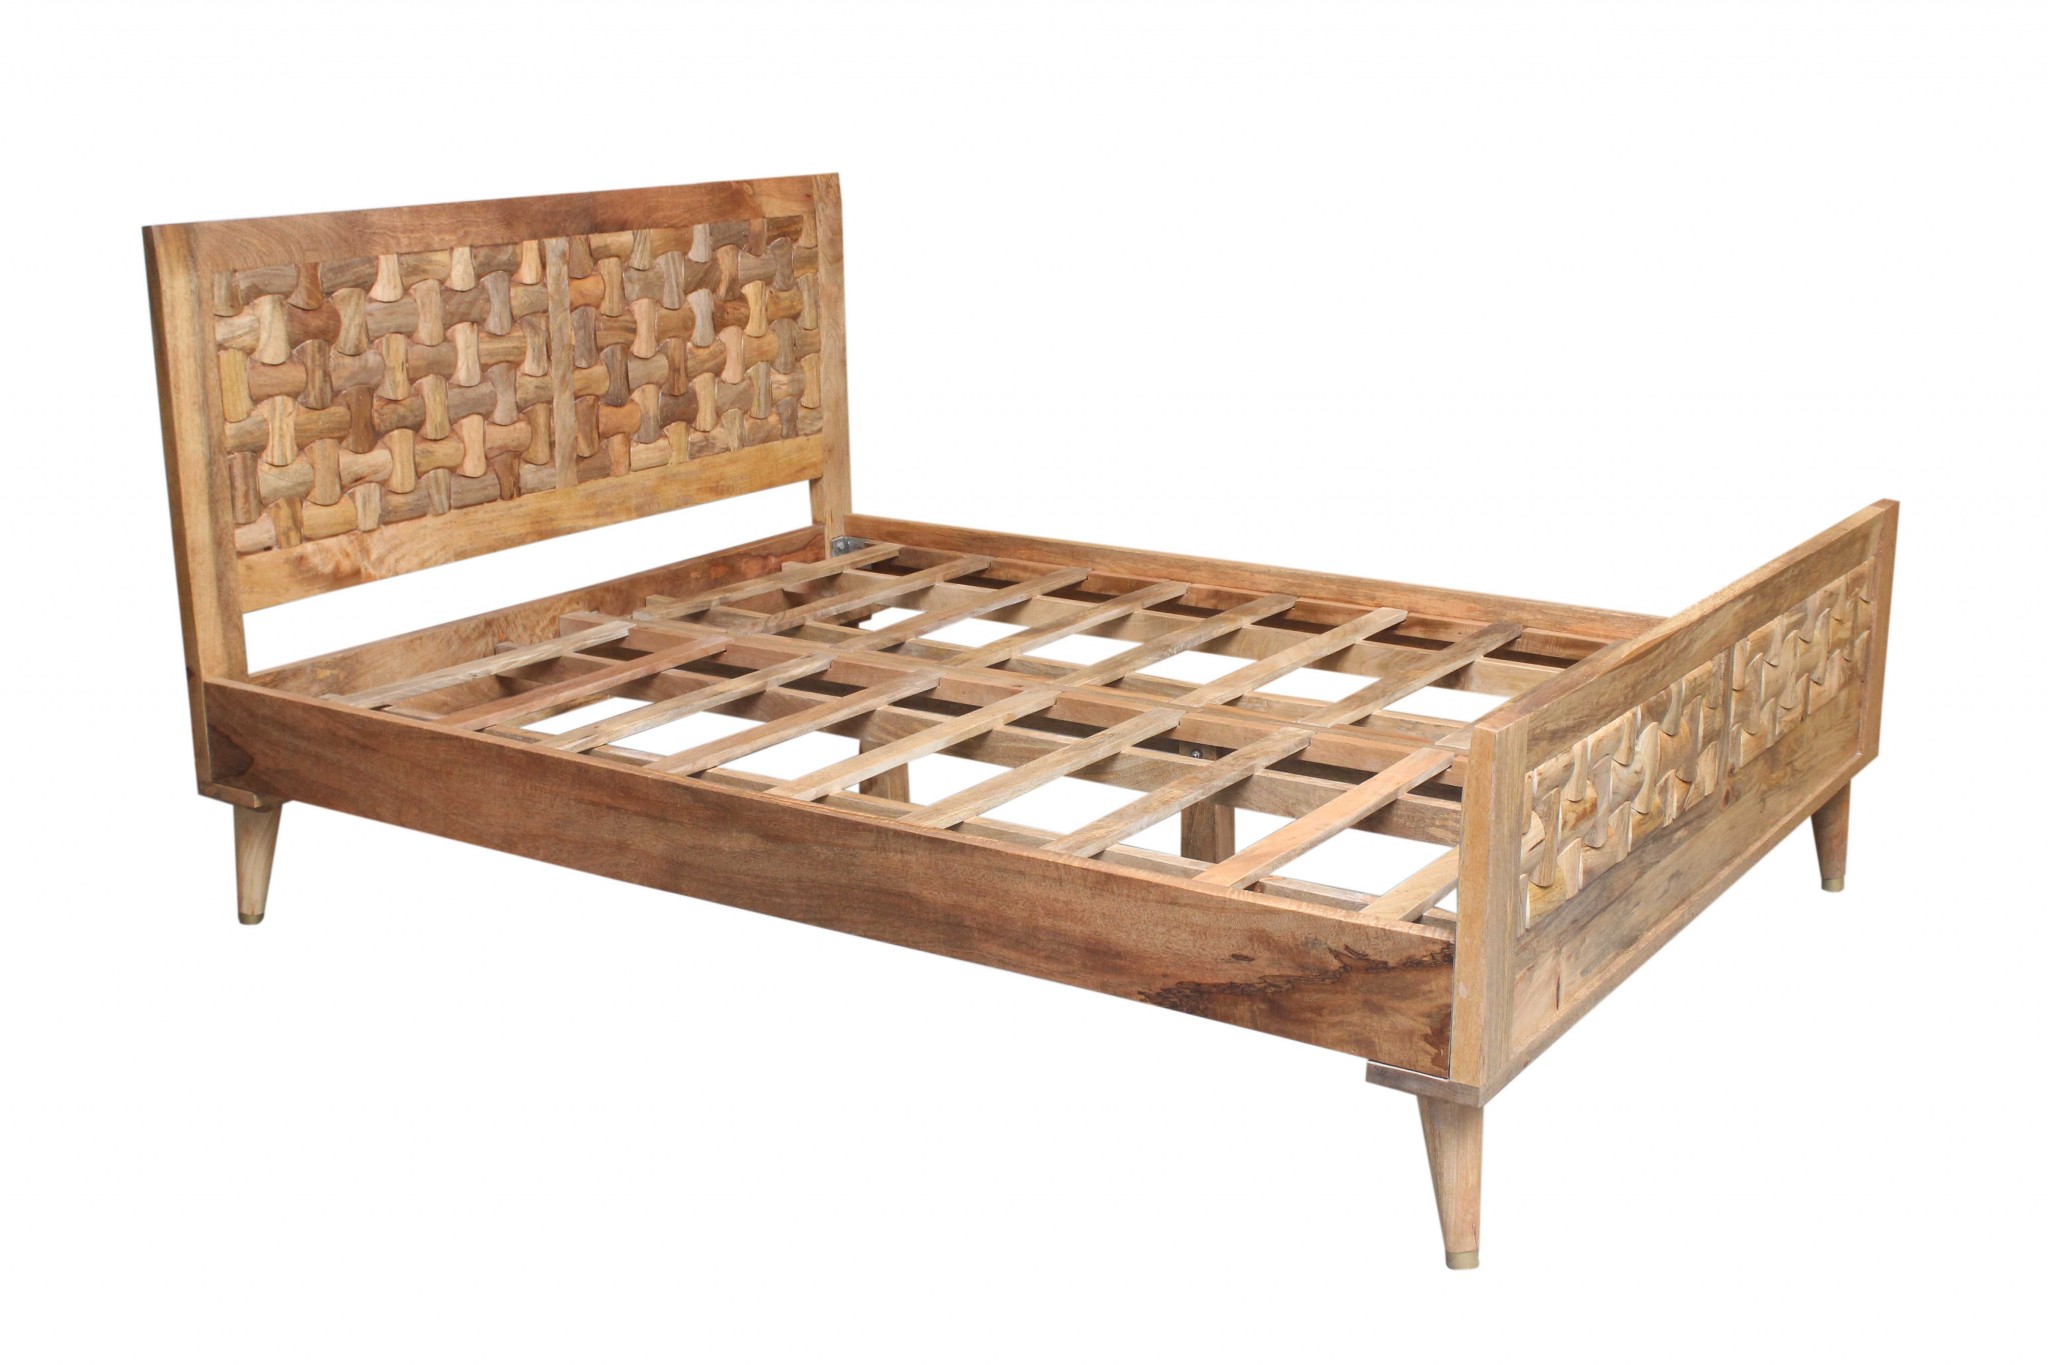 62" X 82" X 42" Honey Wood Queen Size Bed